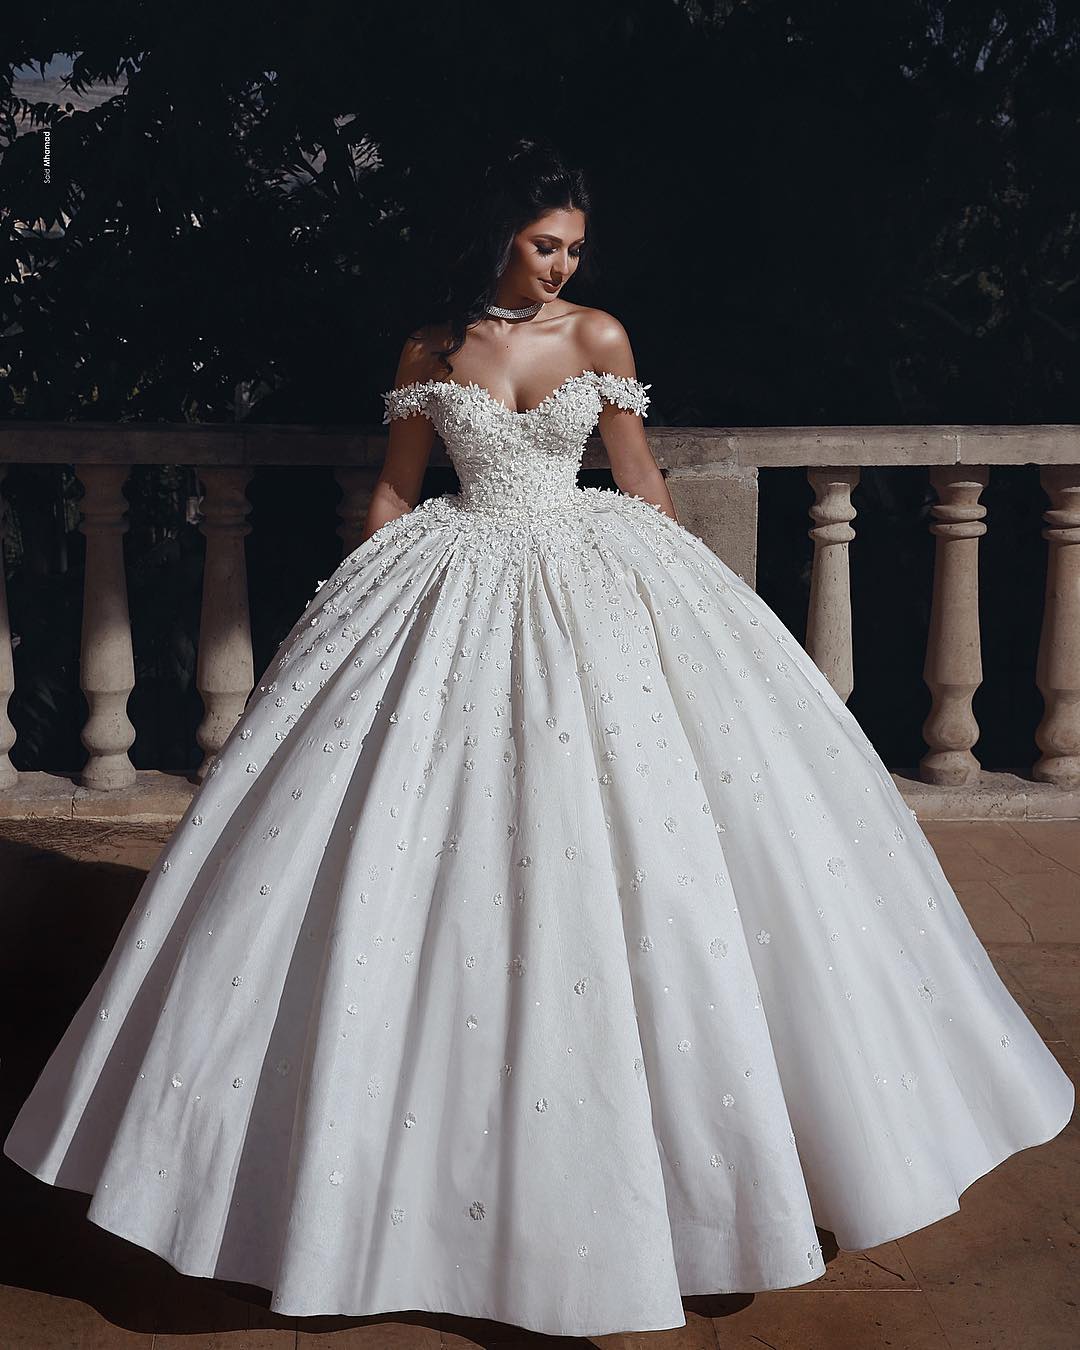 Bestellen Sie Fashion Hochzeitskleider Prinzessin Creme online bei babyonlinedress.de. Bodenlang Brautkleider Günstig Online für Sie zur Hochzeit.